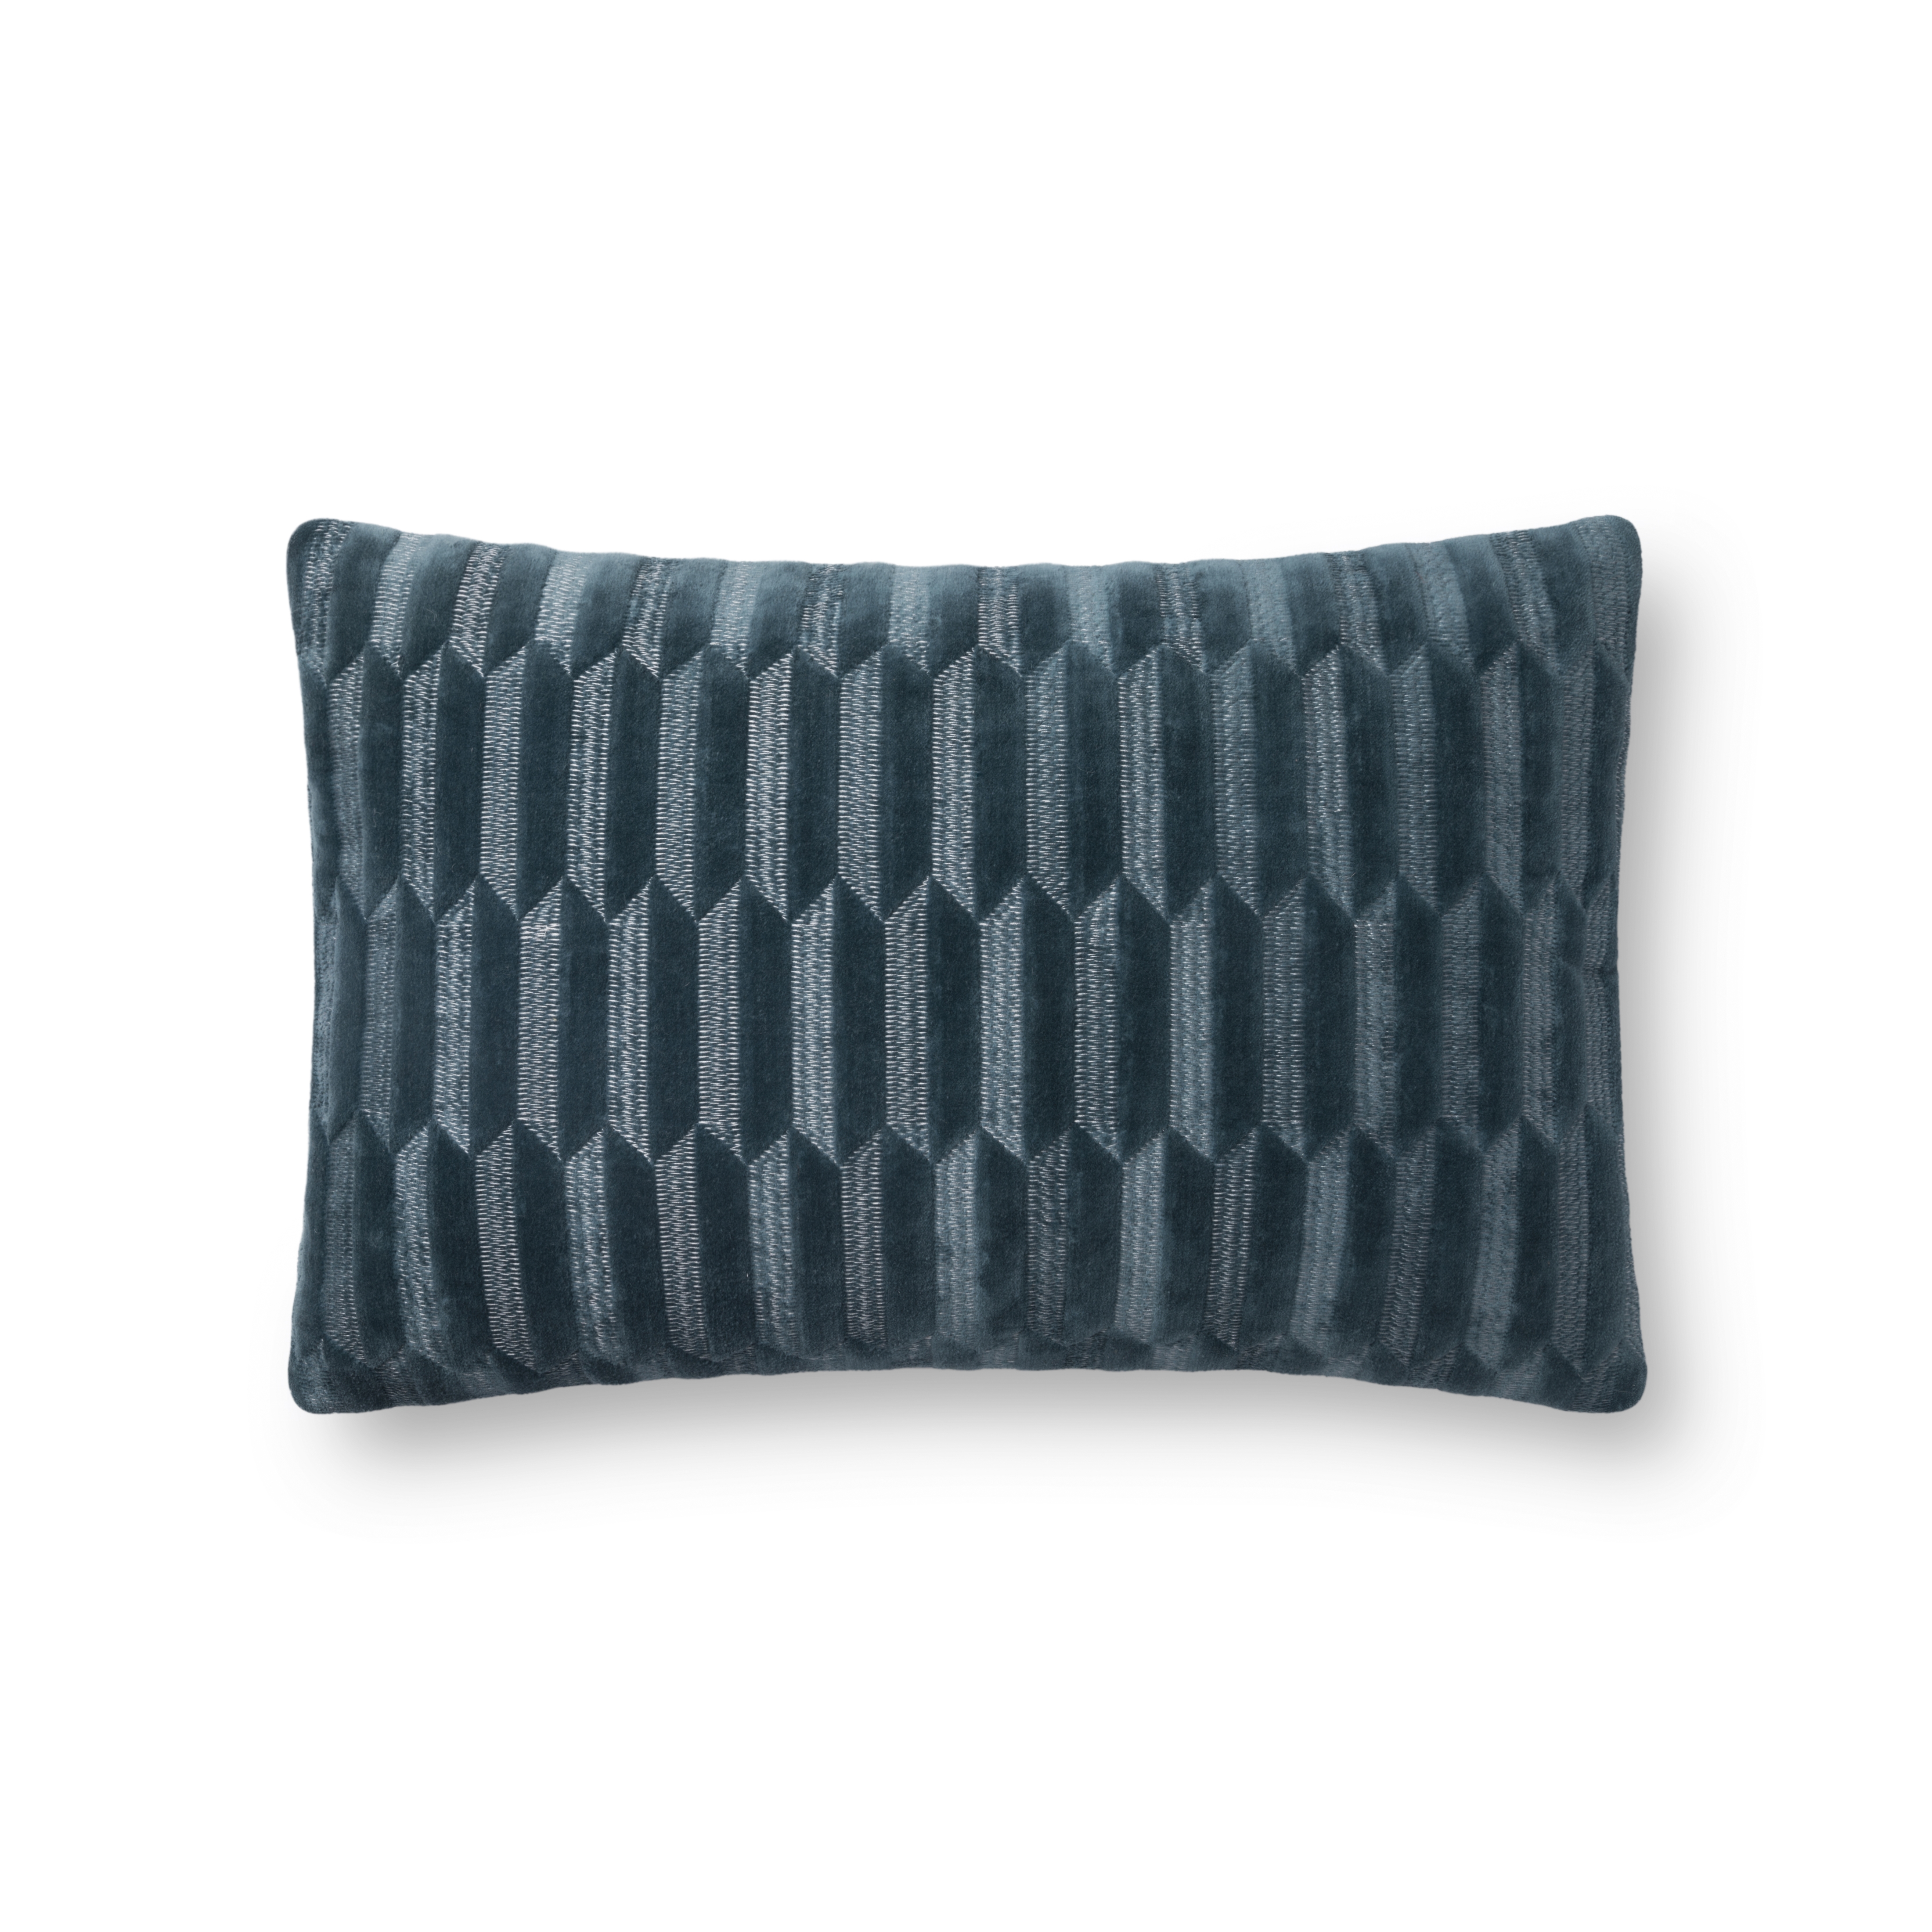 Geometric Lumbar Throw Pillow Cover, 21" x 13", Teal - Image 0